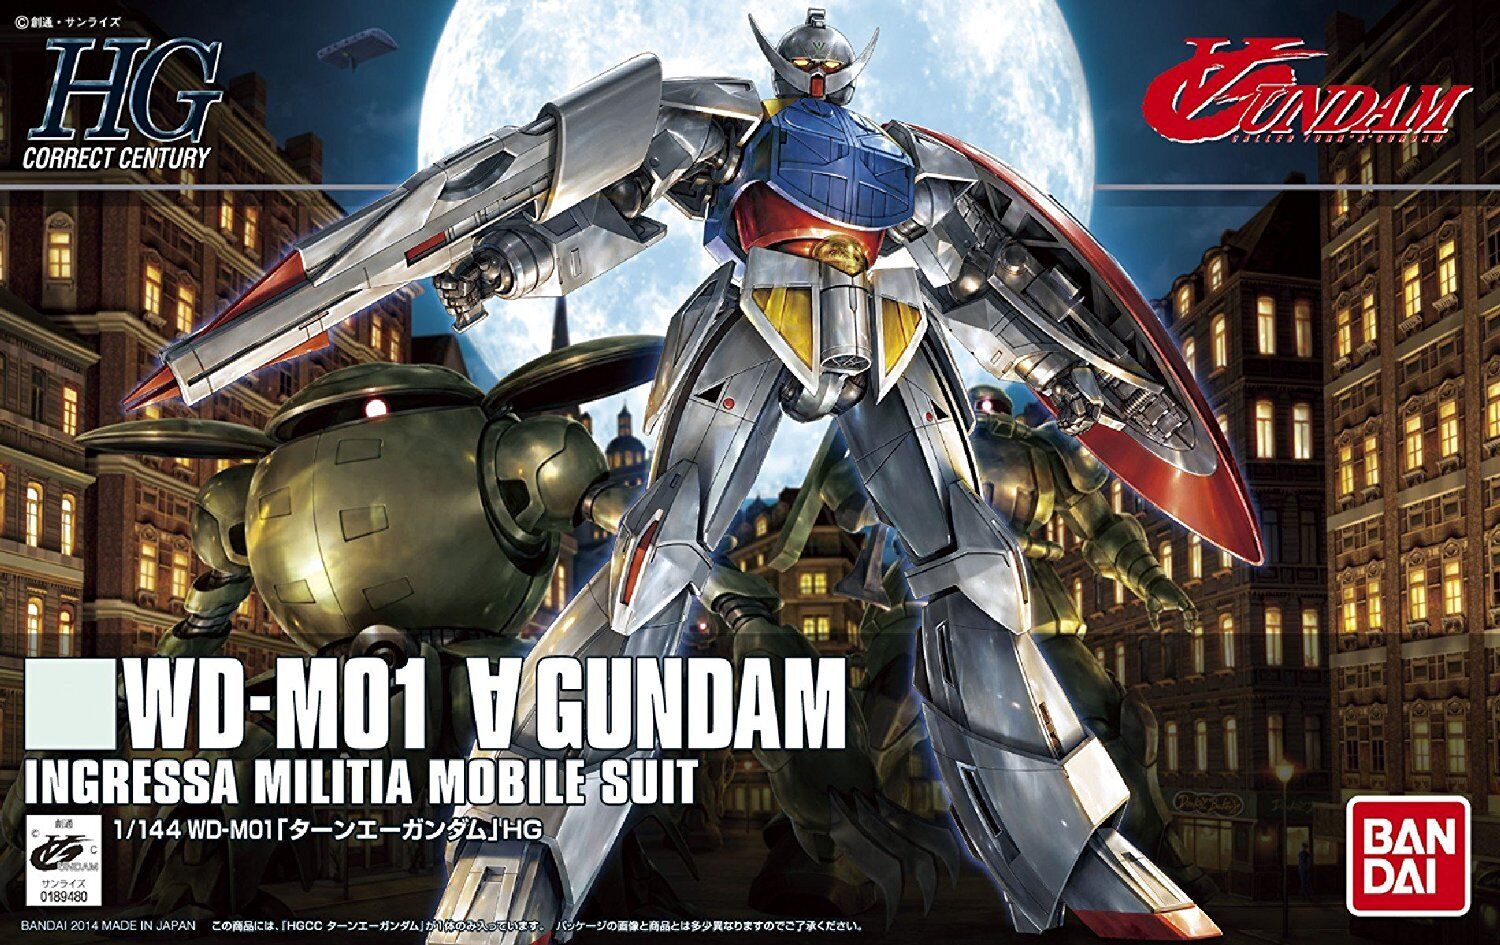 Bandai Hobby HGCC #177 Turn A Gundam HG 1/144 Model Kit USA Seller